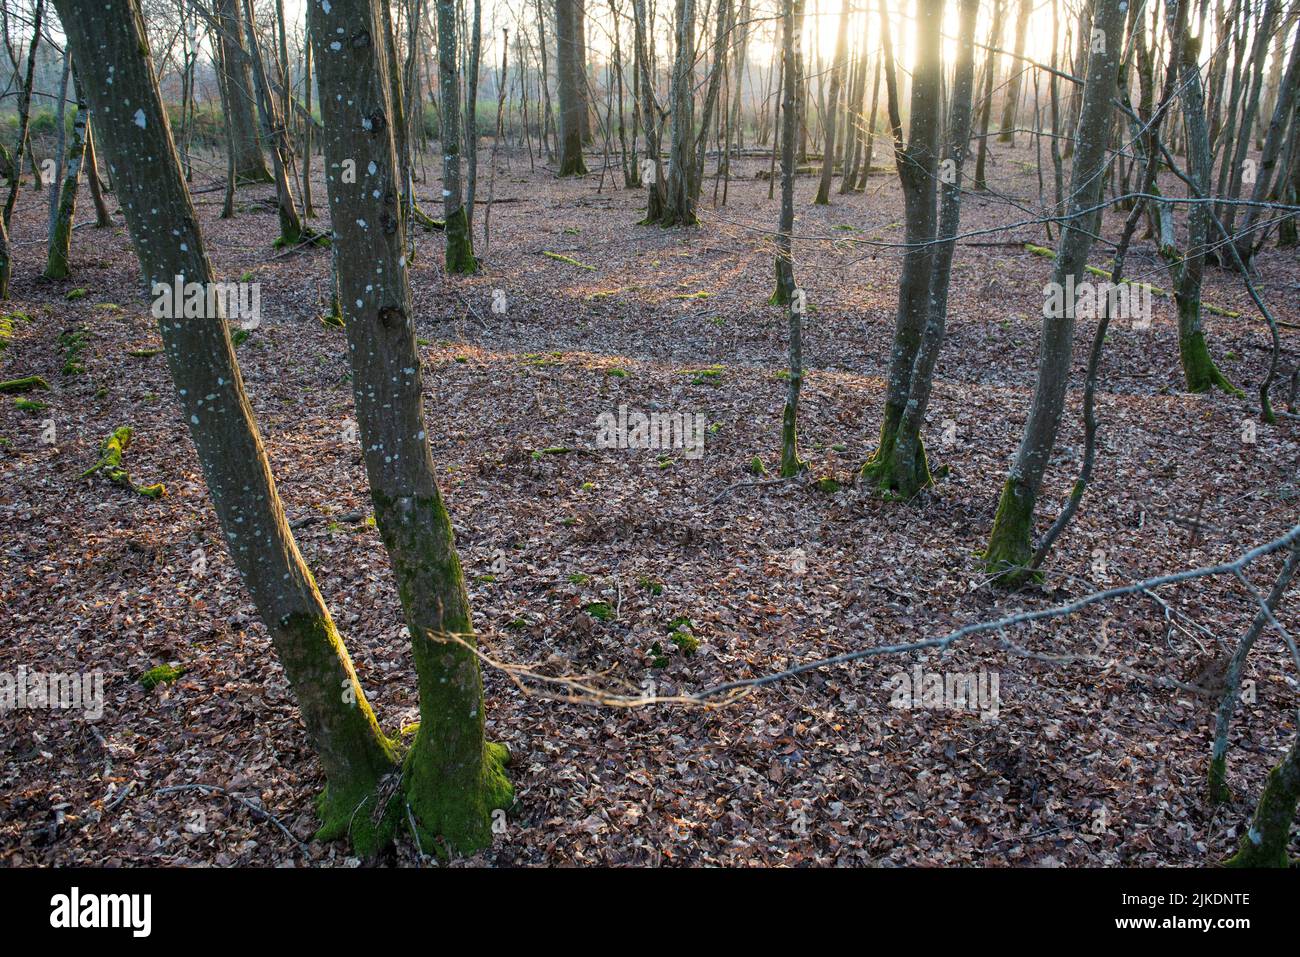 Bosque de carpe en la Selva de Rambouillet, Parque Natural Regional de Haute Vallée de Chevreuse, departamento de Yvelines, región de Isla de Francia, Francia, Foto de stock